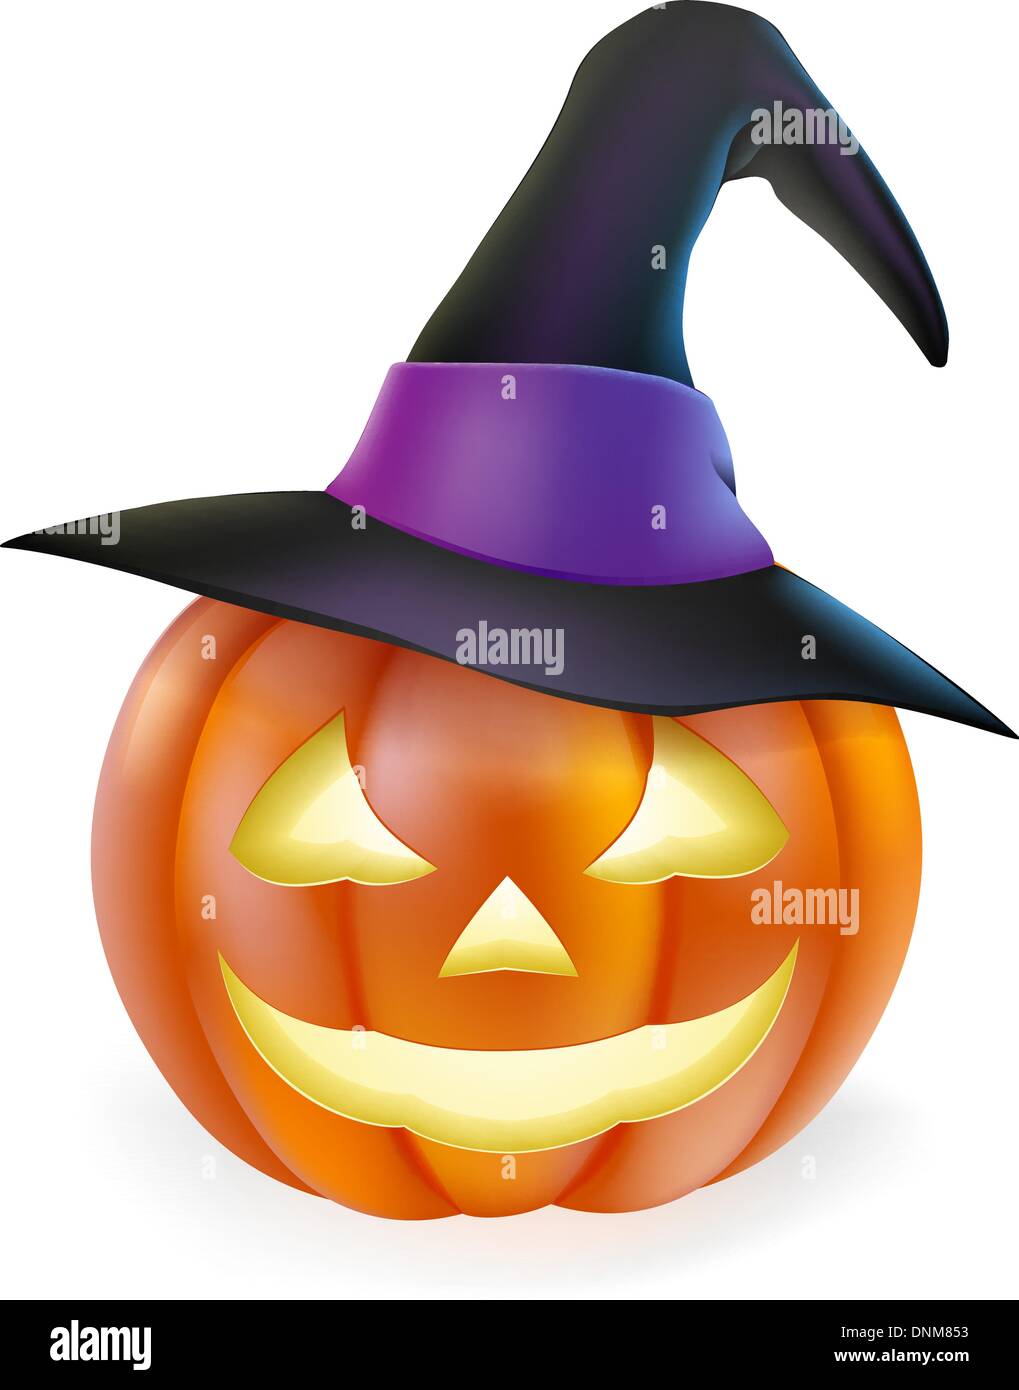 Zur Veranschaulichung der niedlichen Cartoon Halloween Kürbis Laterne mit glücklichen Lächeln geschnitzt und wies Hexenhut Stock Vektor